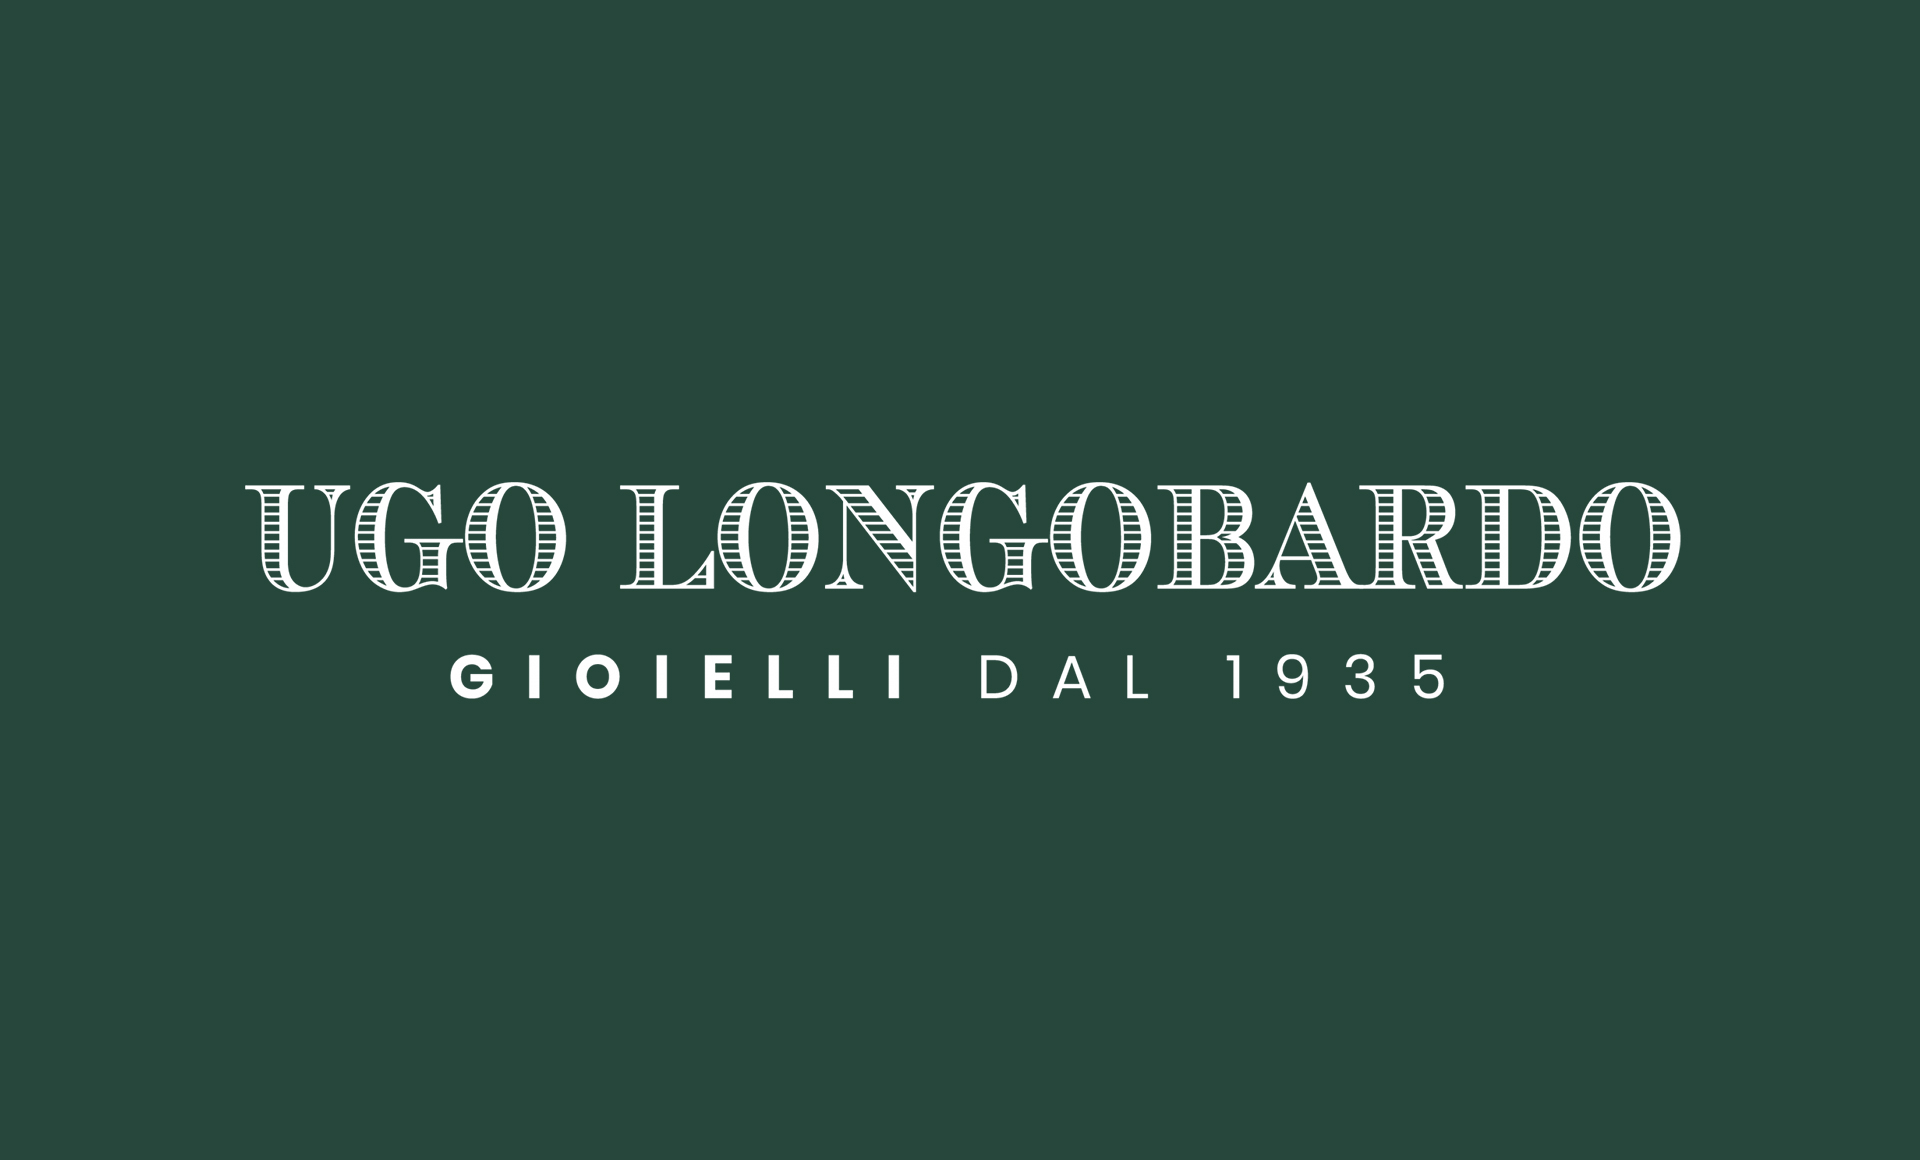 Ugo Longobardo Gioielli dal 1935